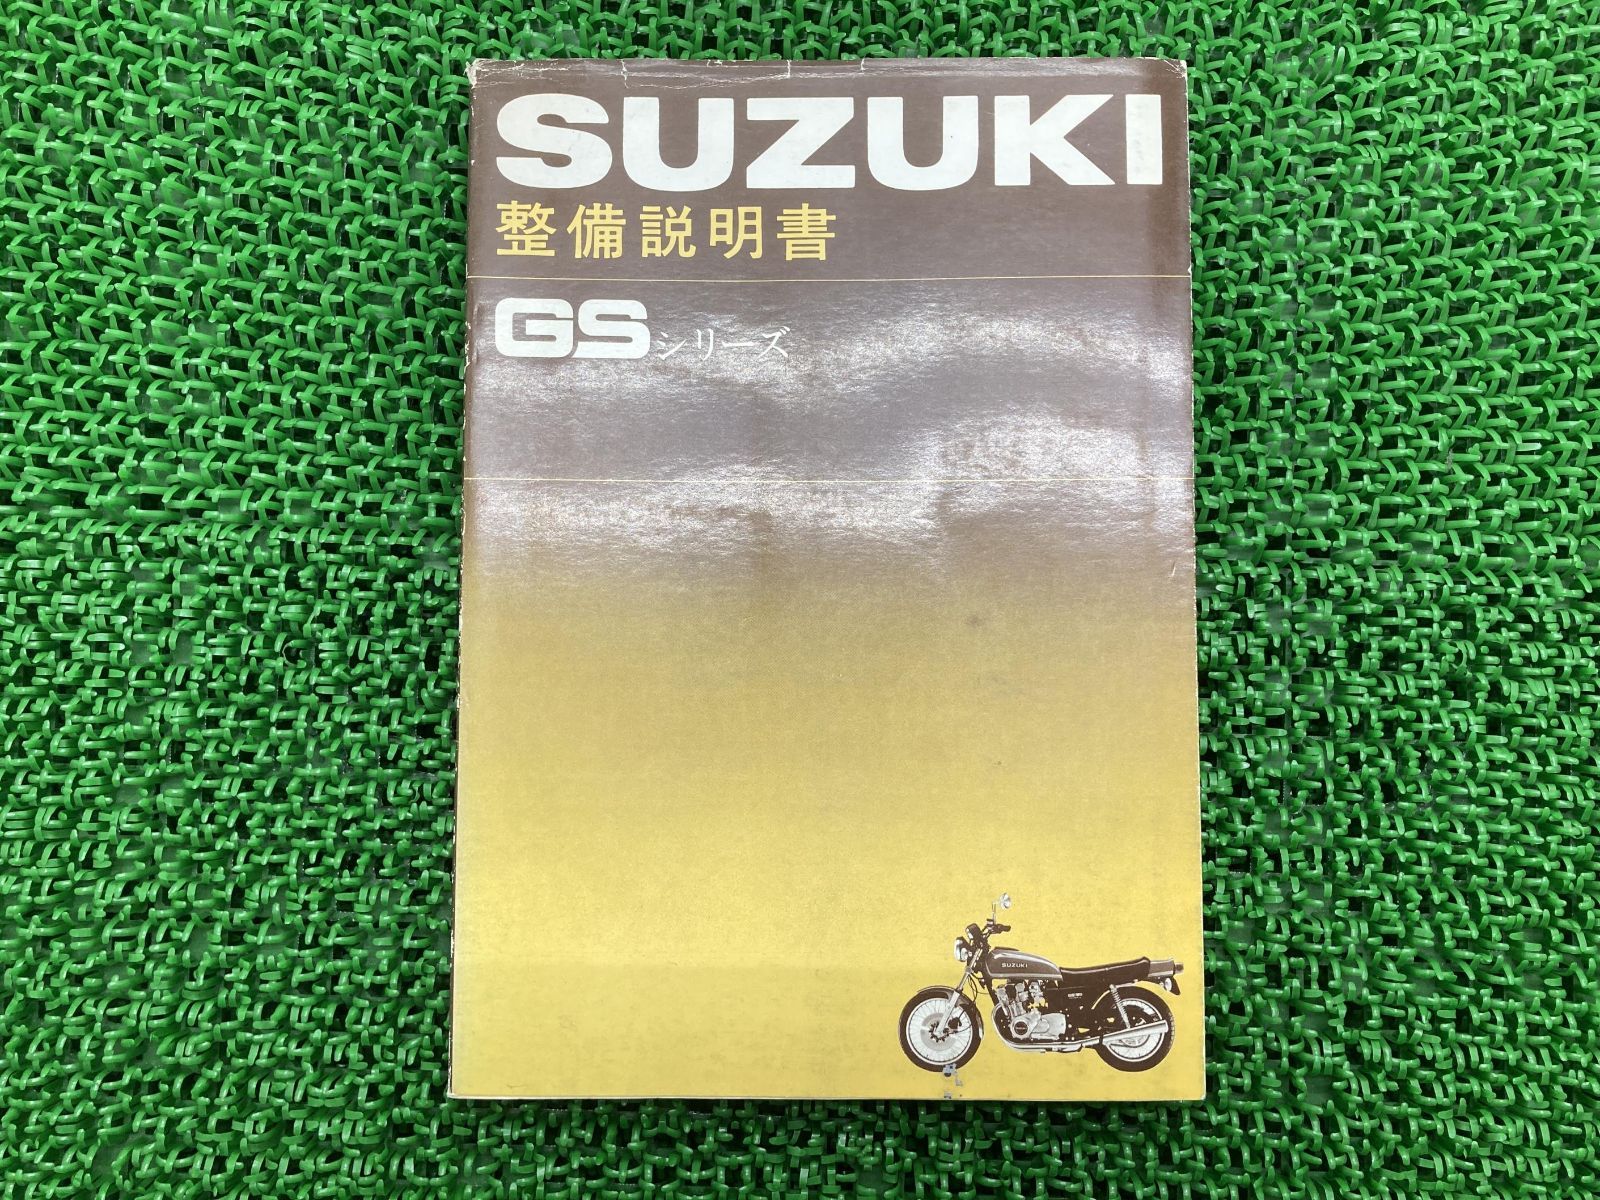 スズキGS 750G サービスマニュアル パーツリスト - オートバイアクセサリー